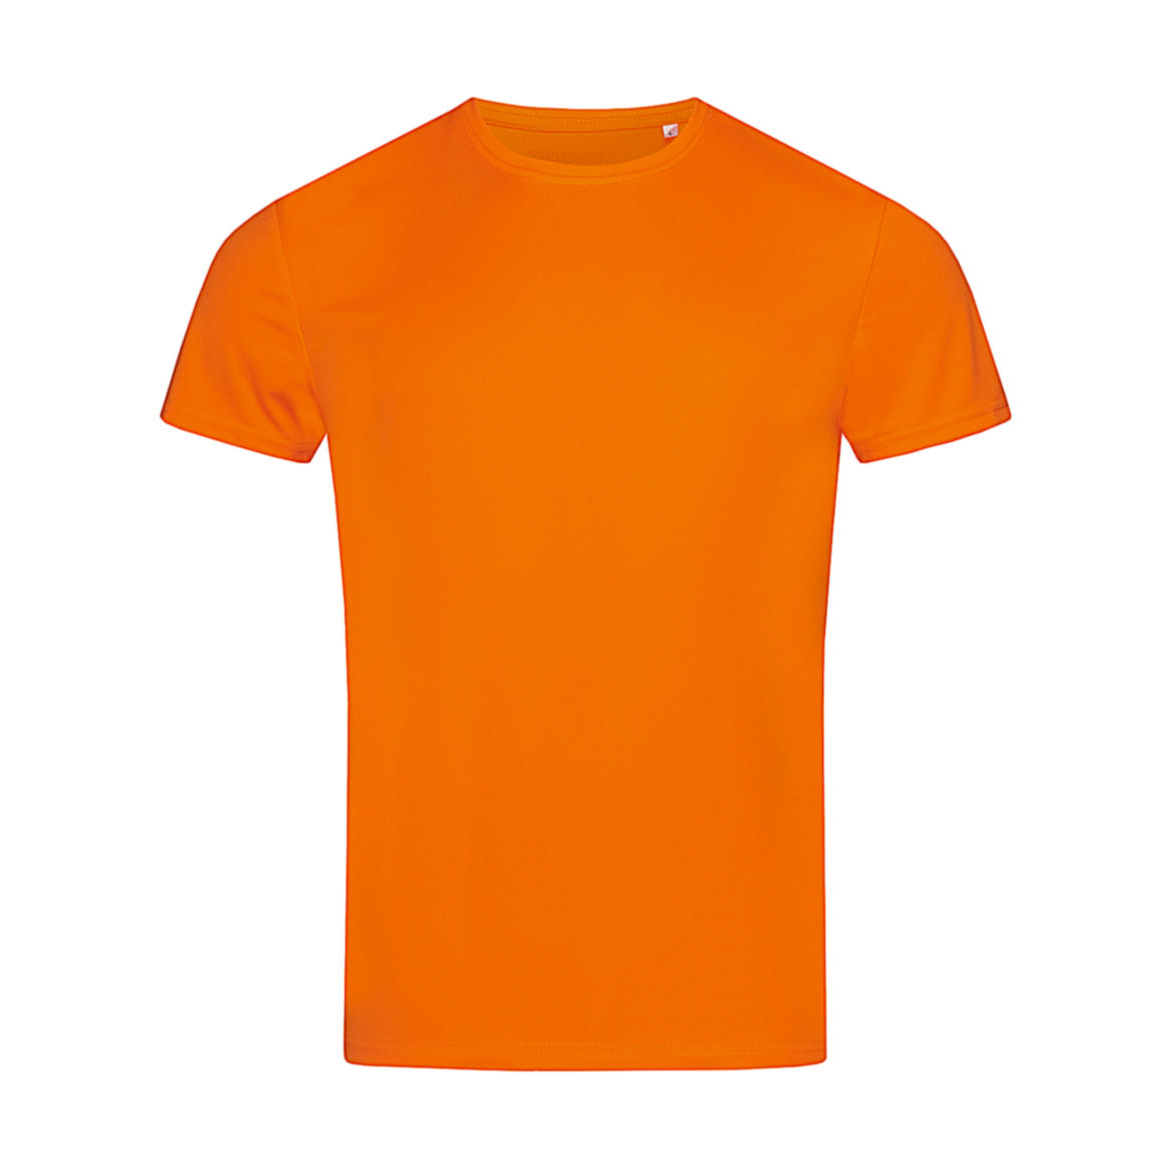 Triko pánské Stedman sportovní tričko - oranžové, XL